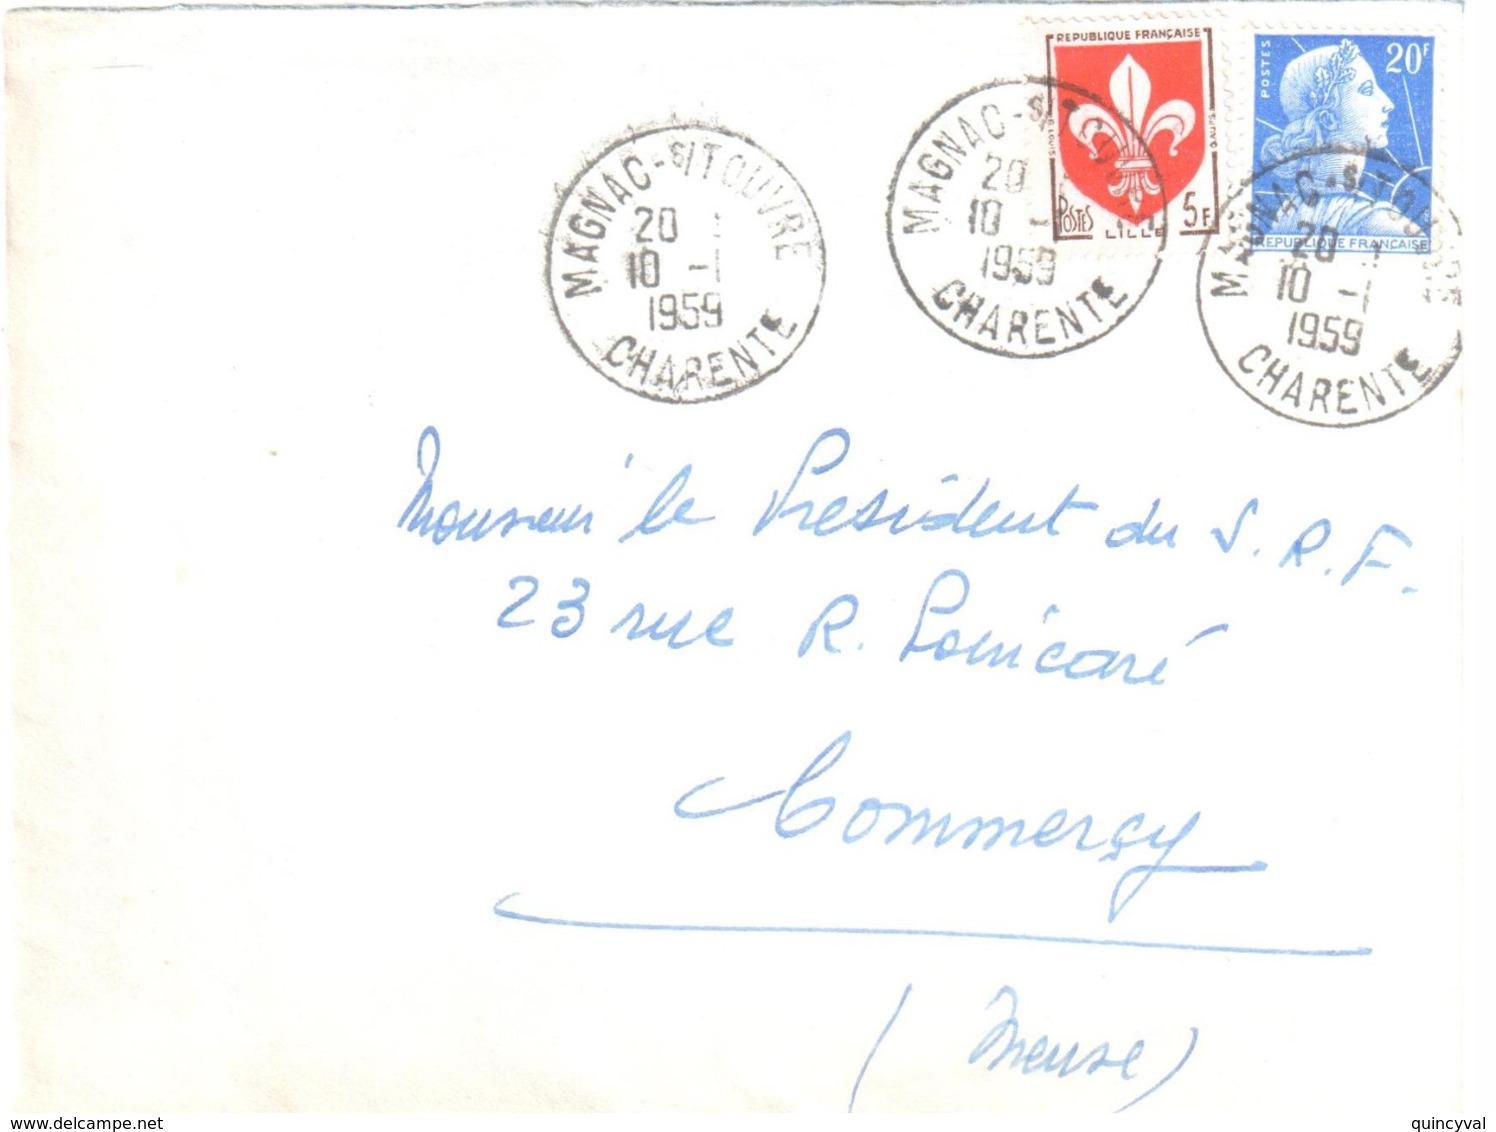 MAGNAC Sur TOUVRE Charente Lettre 20 F Muller 5 F Blason Lille Yv 1011B 1186 Ob 10 1 1959 Dest Commercy Meuse - Brieven En Documenten